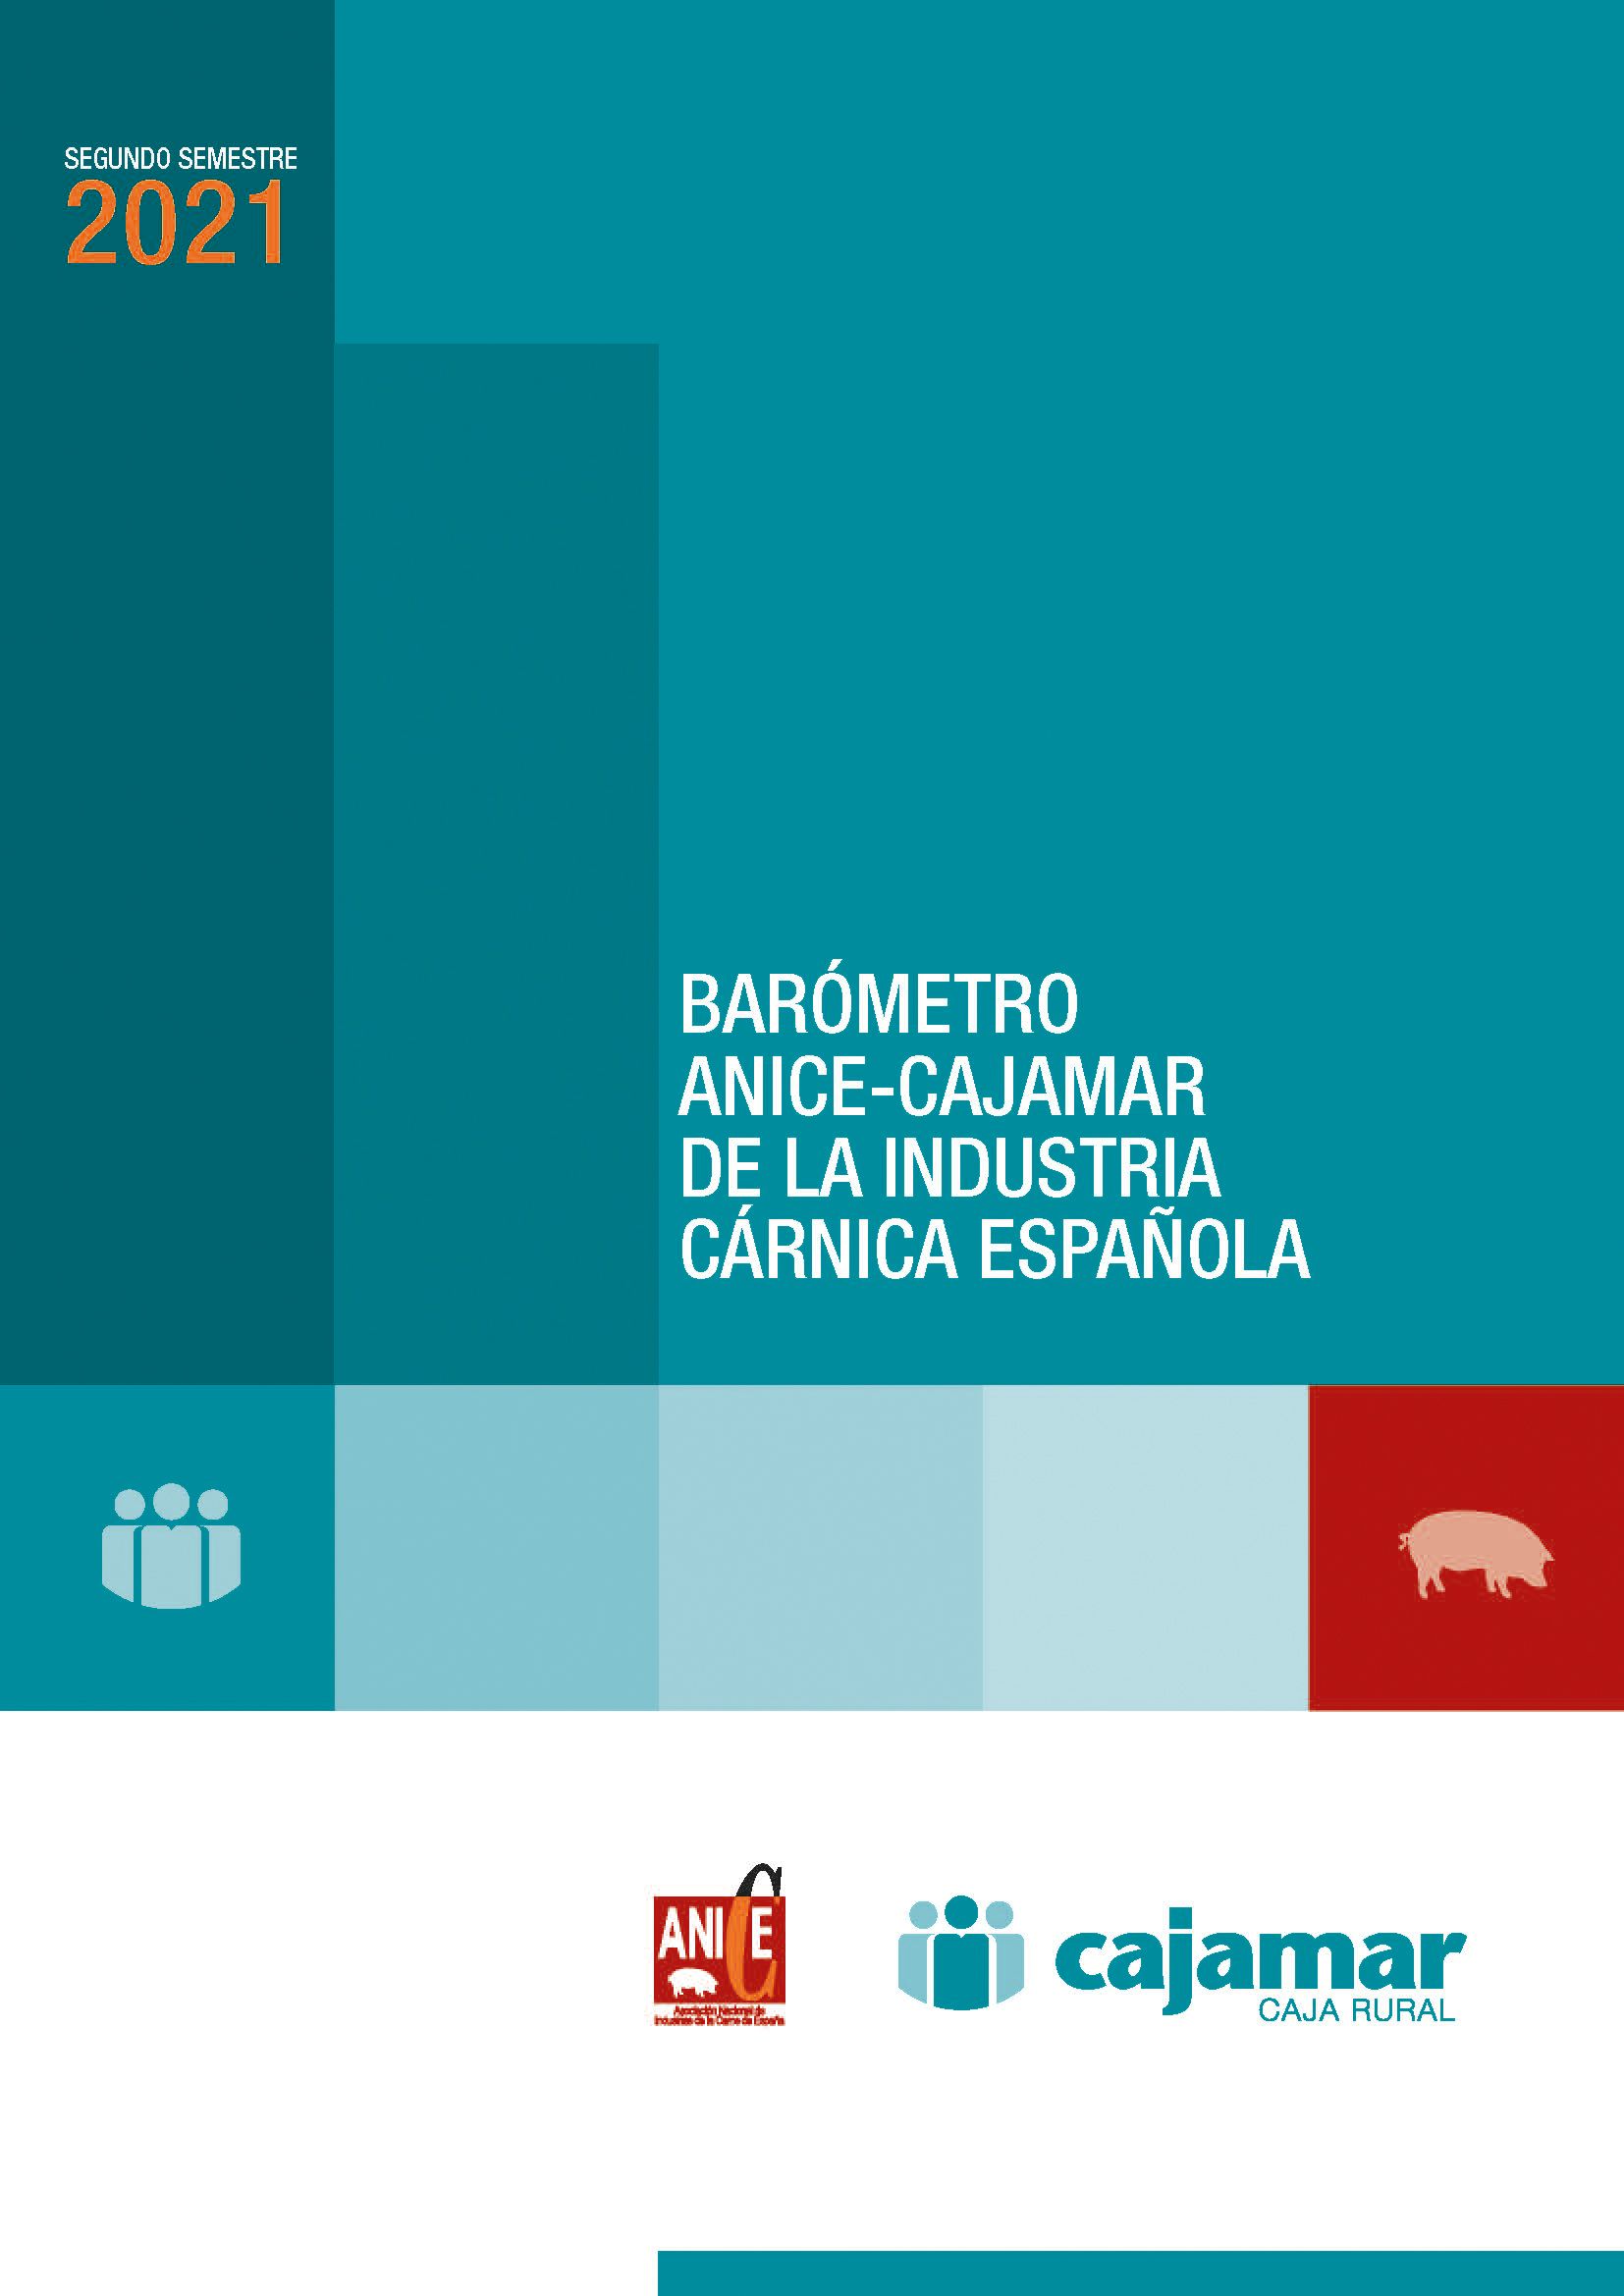 portada del barómetro ANICE-CAJAMAR de la industria cárnica española del segundo semestre de 2021